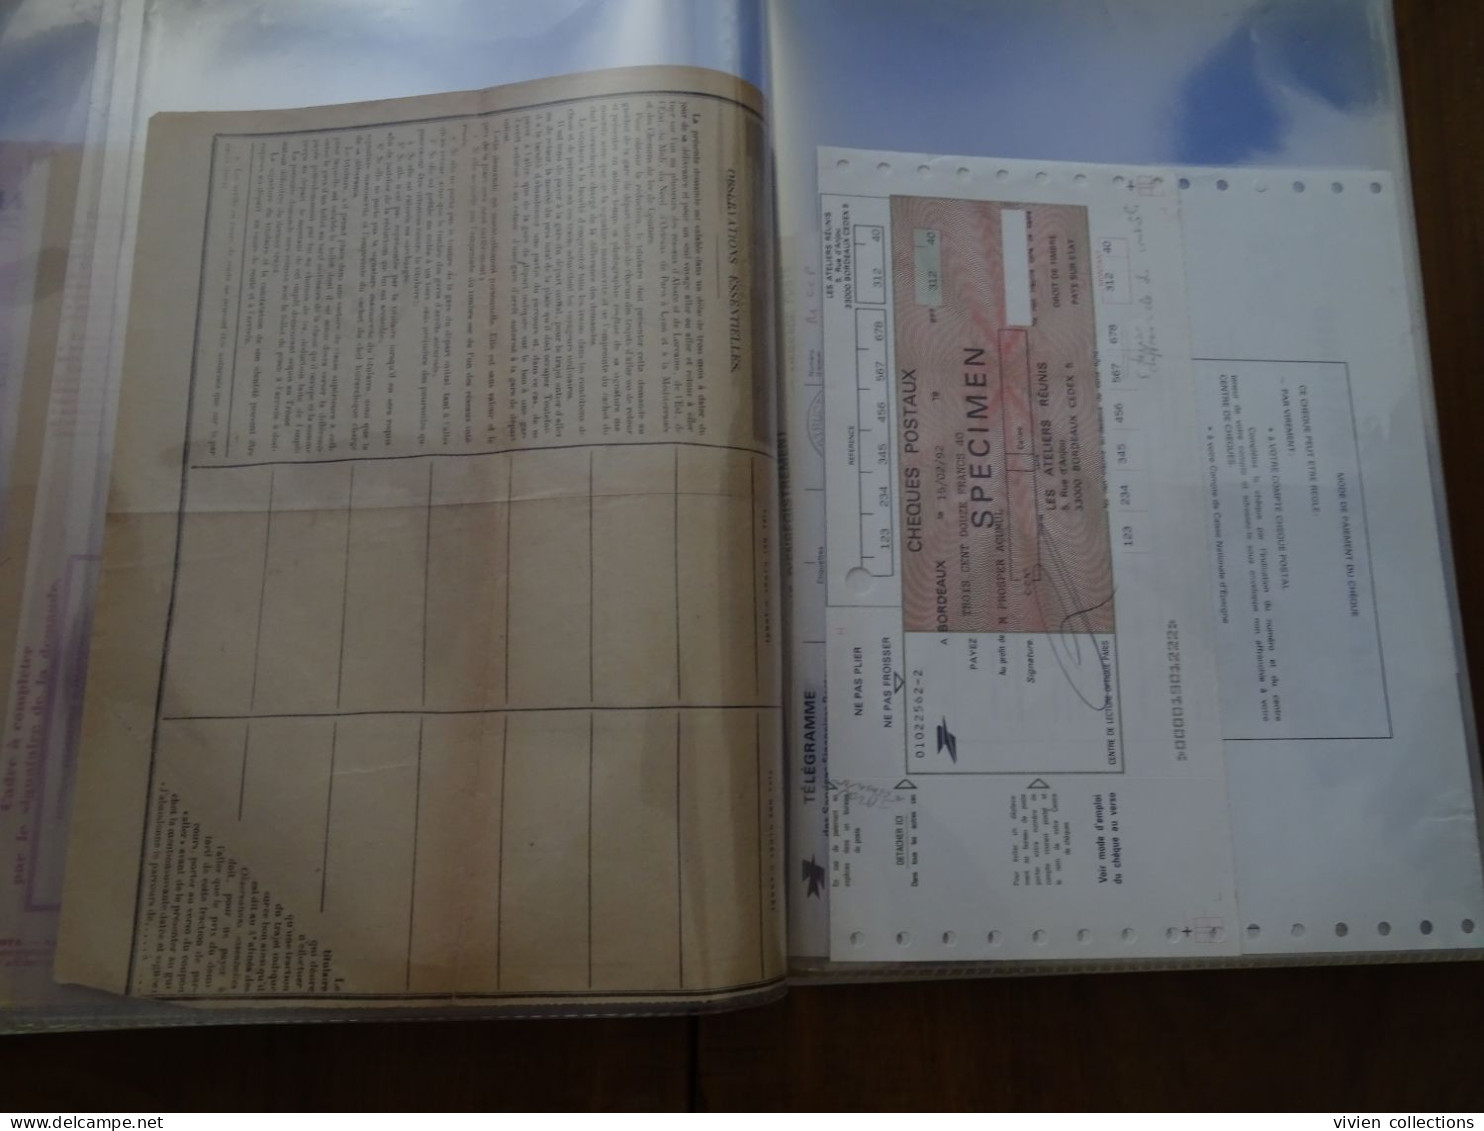 France cours pratique d'instruction d'Orléans 1953/4 et divers + sacs postaux La Poste Deutch Bunderpost aérien